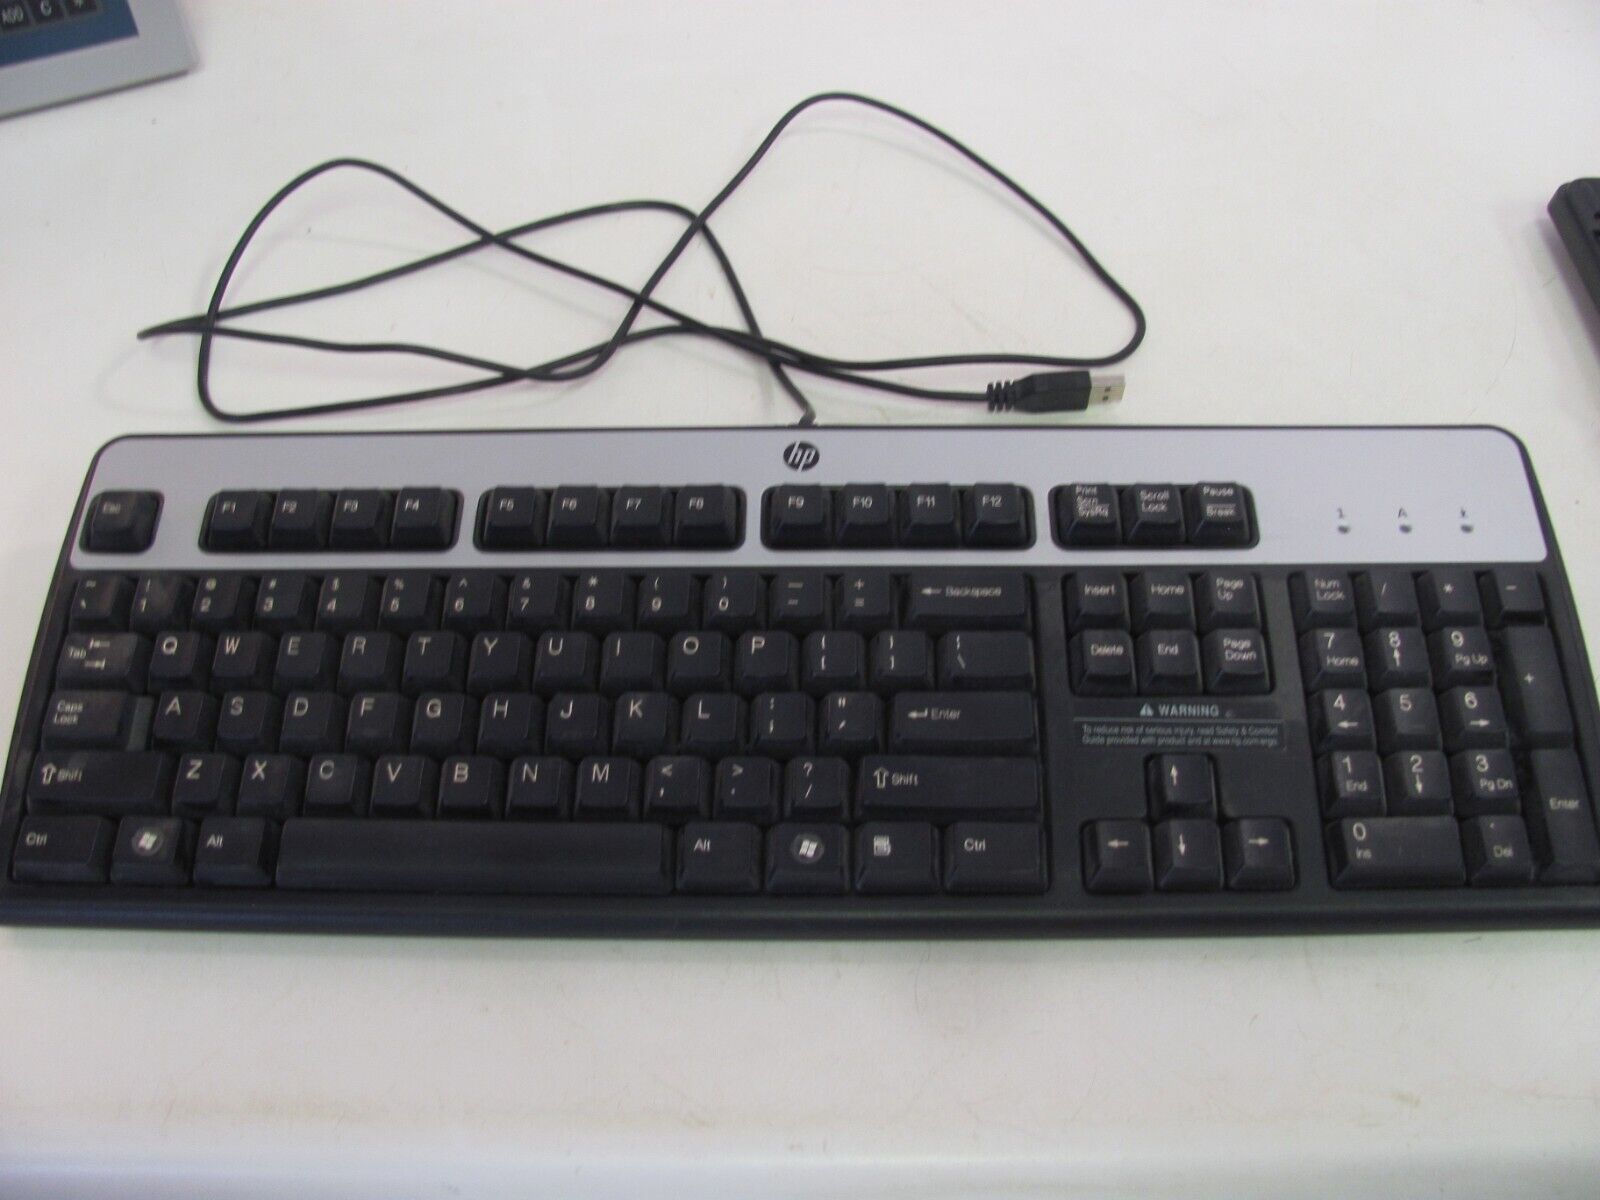 HP KU-0316 Black/Silver USB Wired 104-Key Layout Keyboard